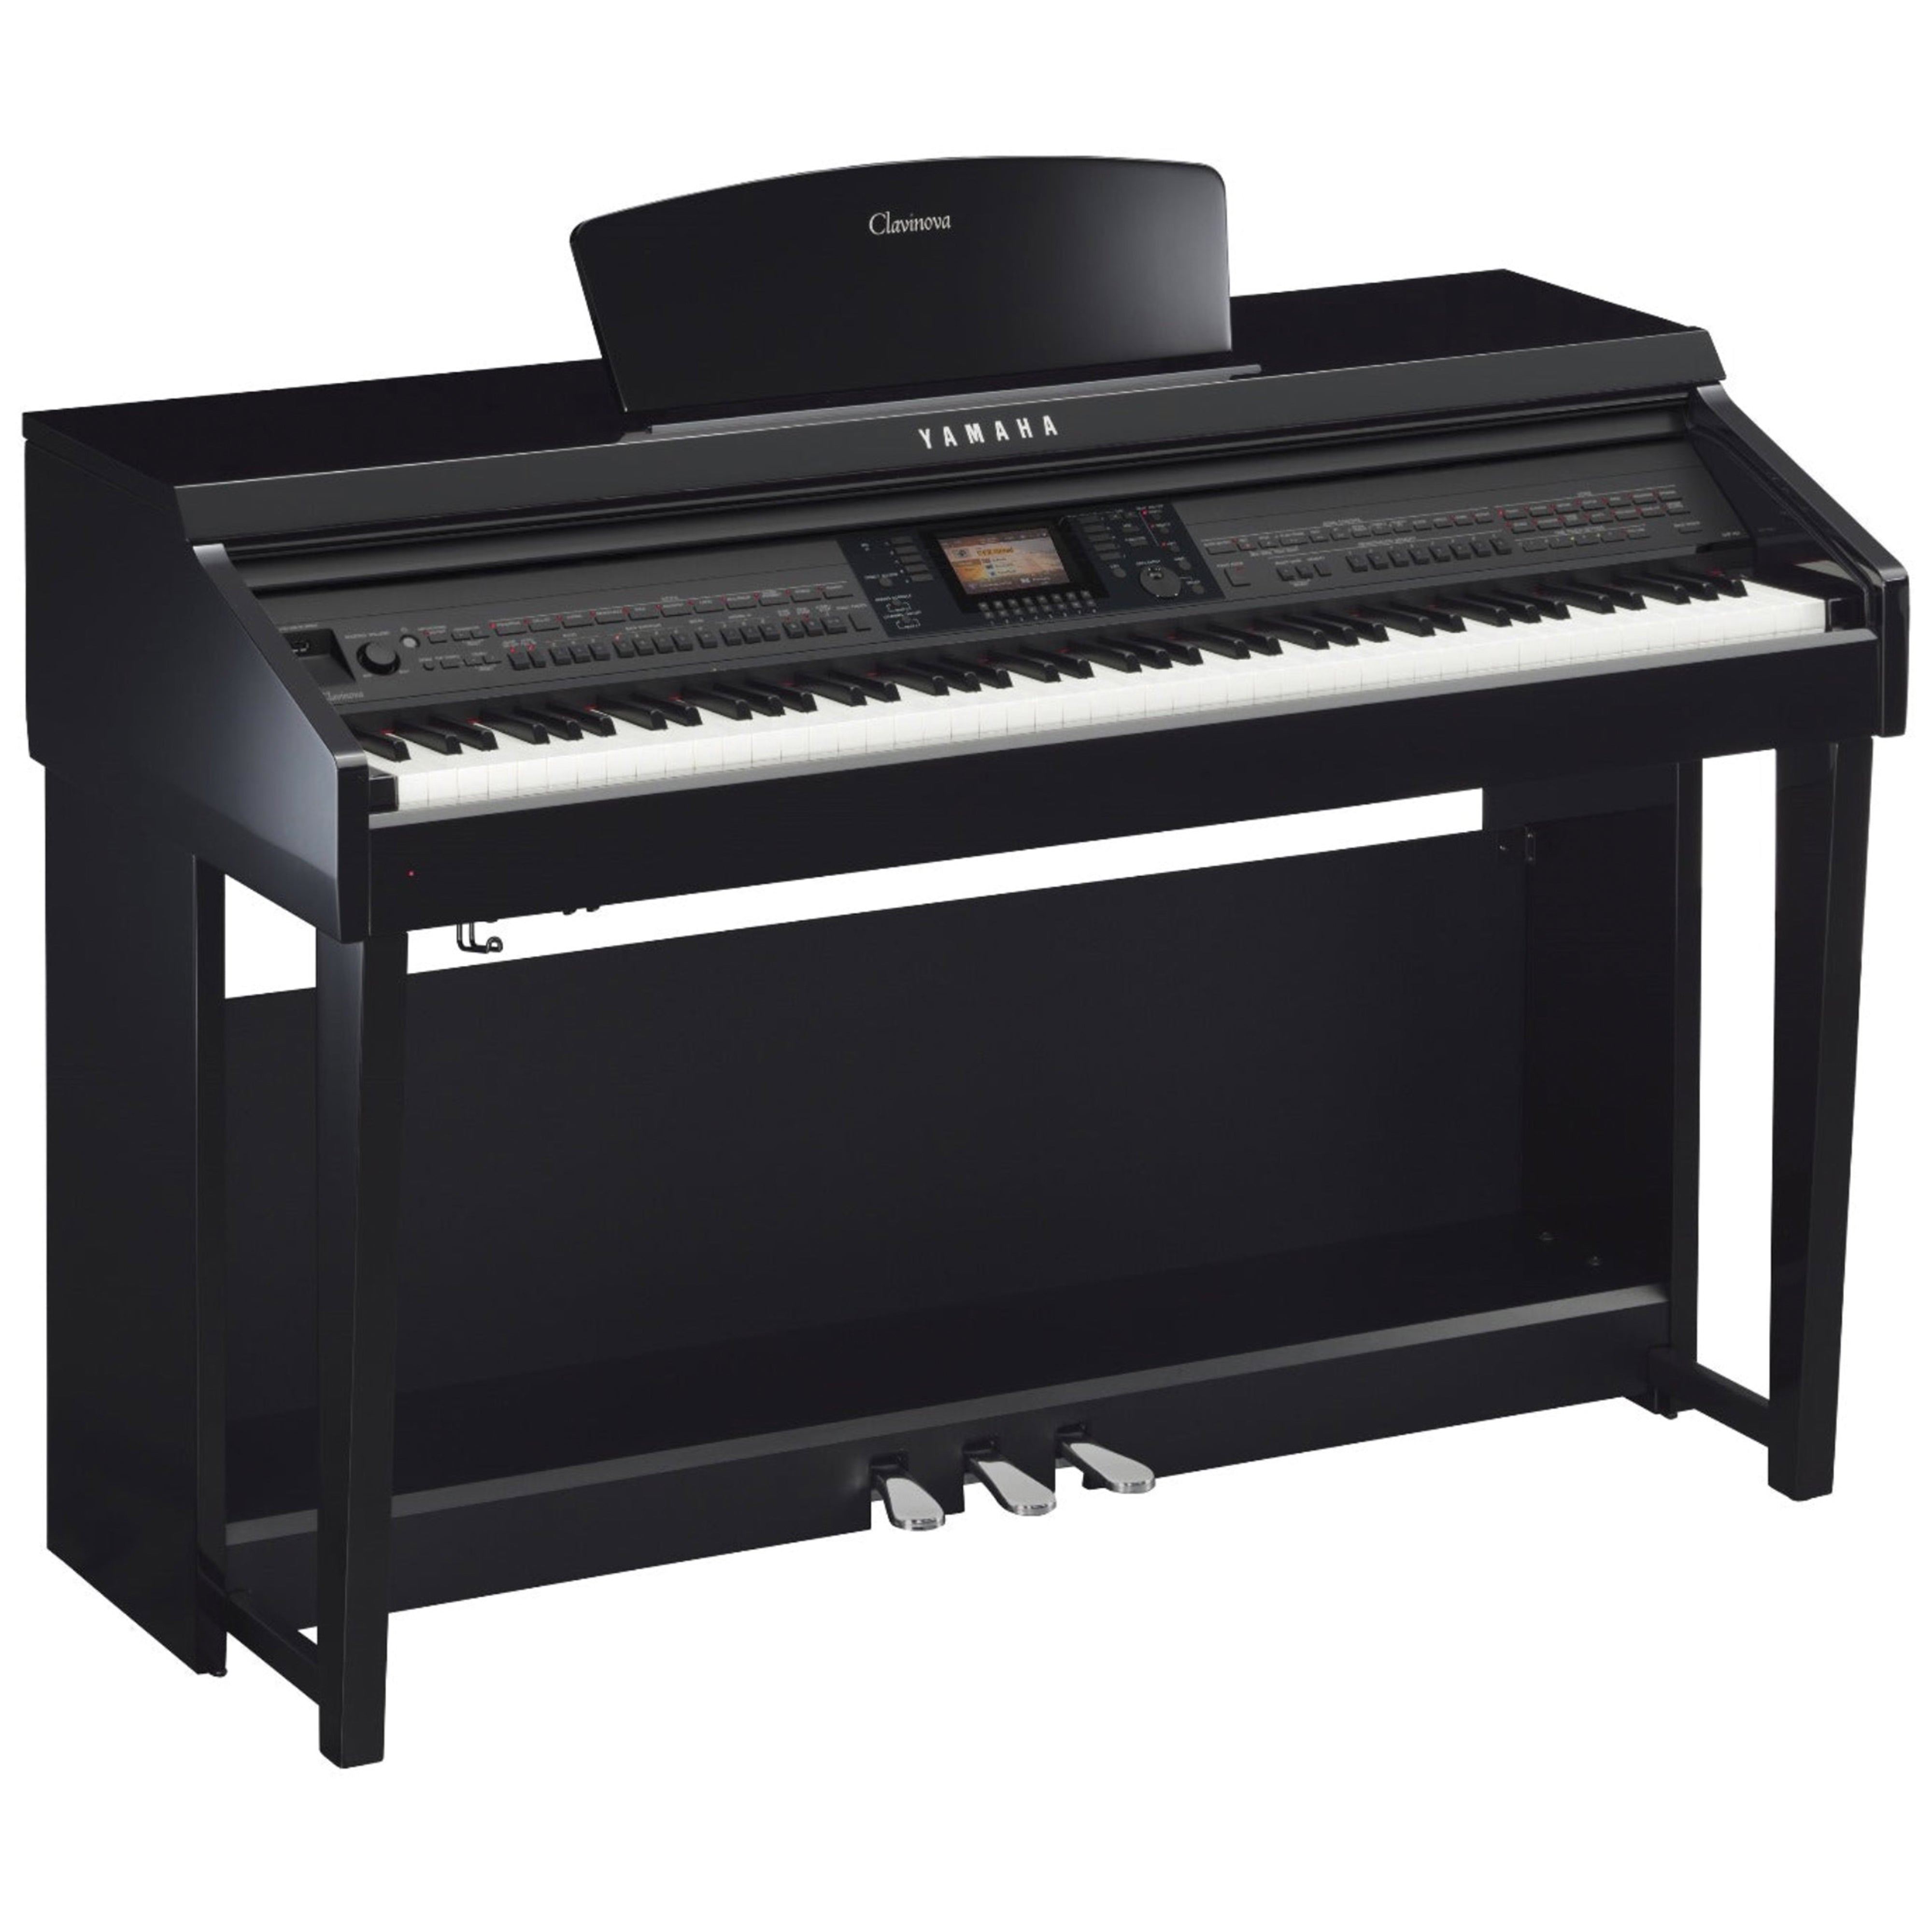 Yamaha Clavinova CVP-701 Digital Piano - Polished Ebony - angle view - no bench